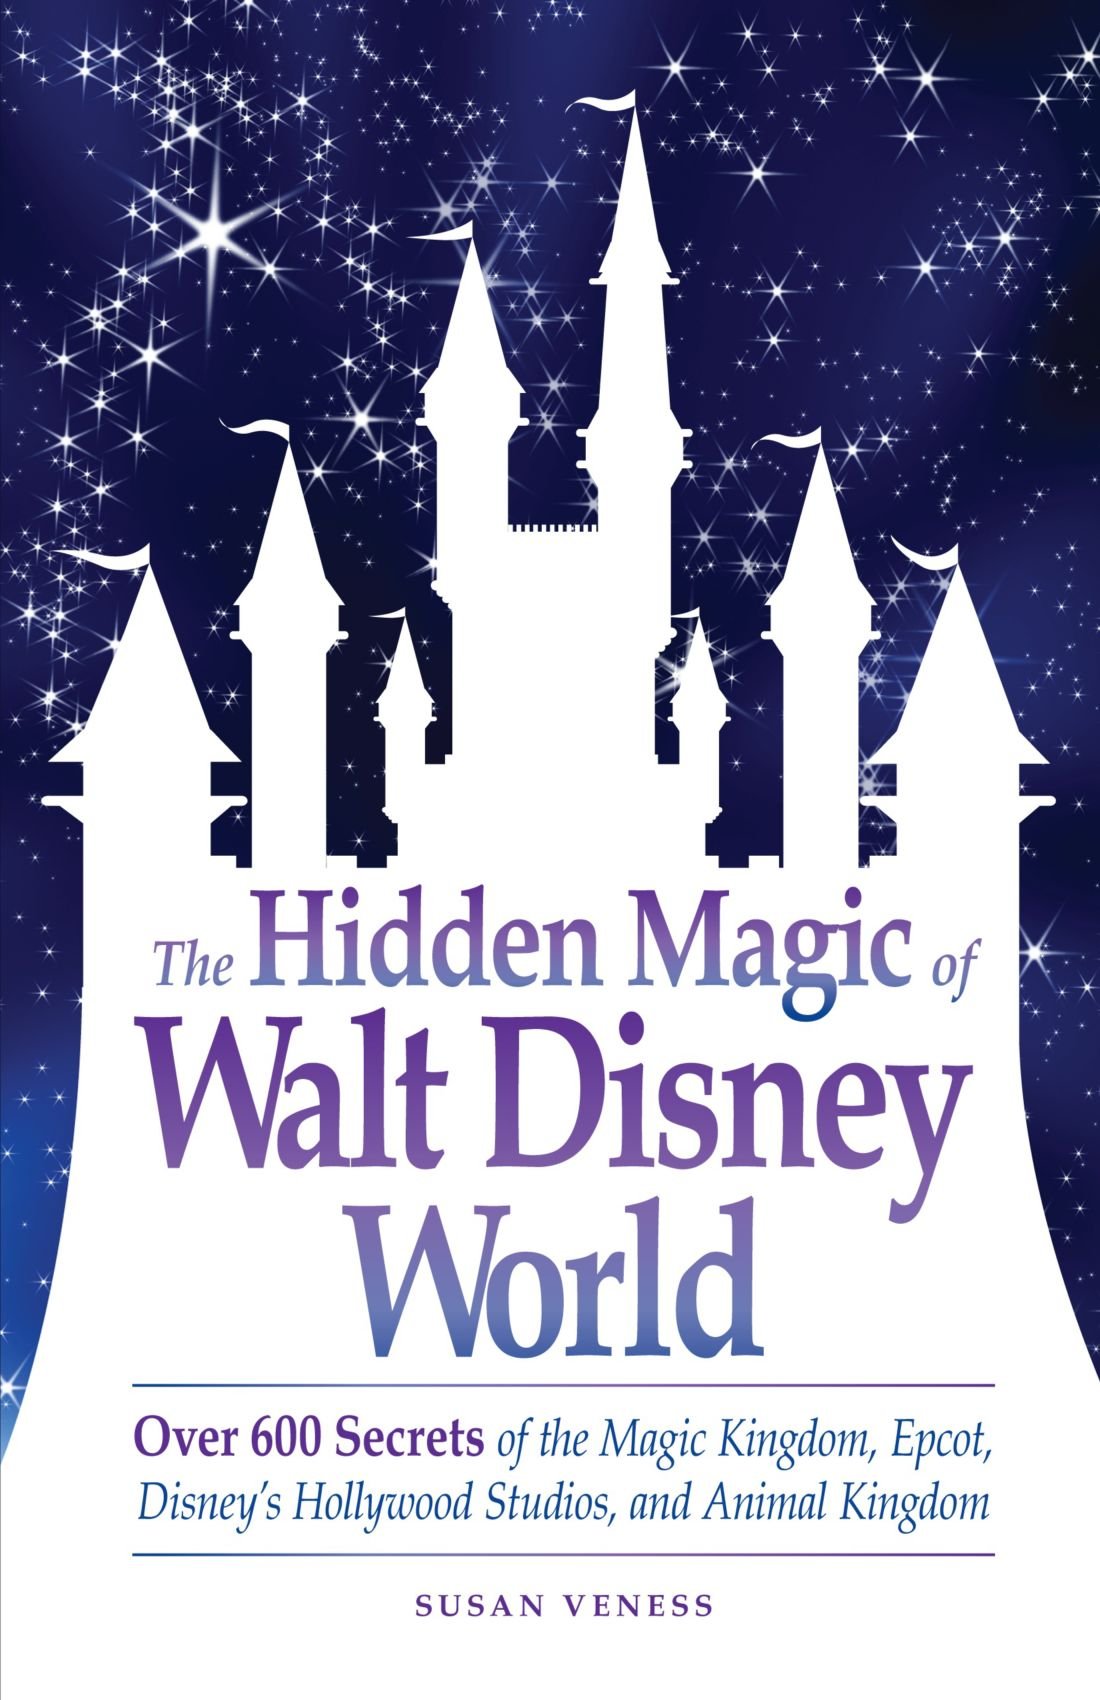 Book: The Hidden Magic of Walt Disney World by Susan Veness